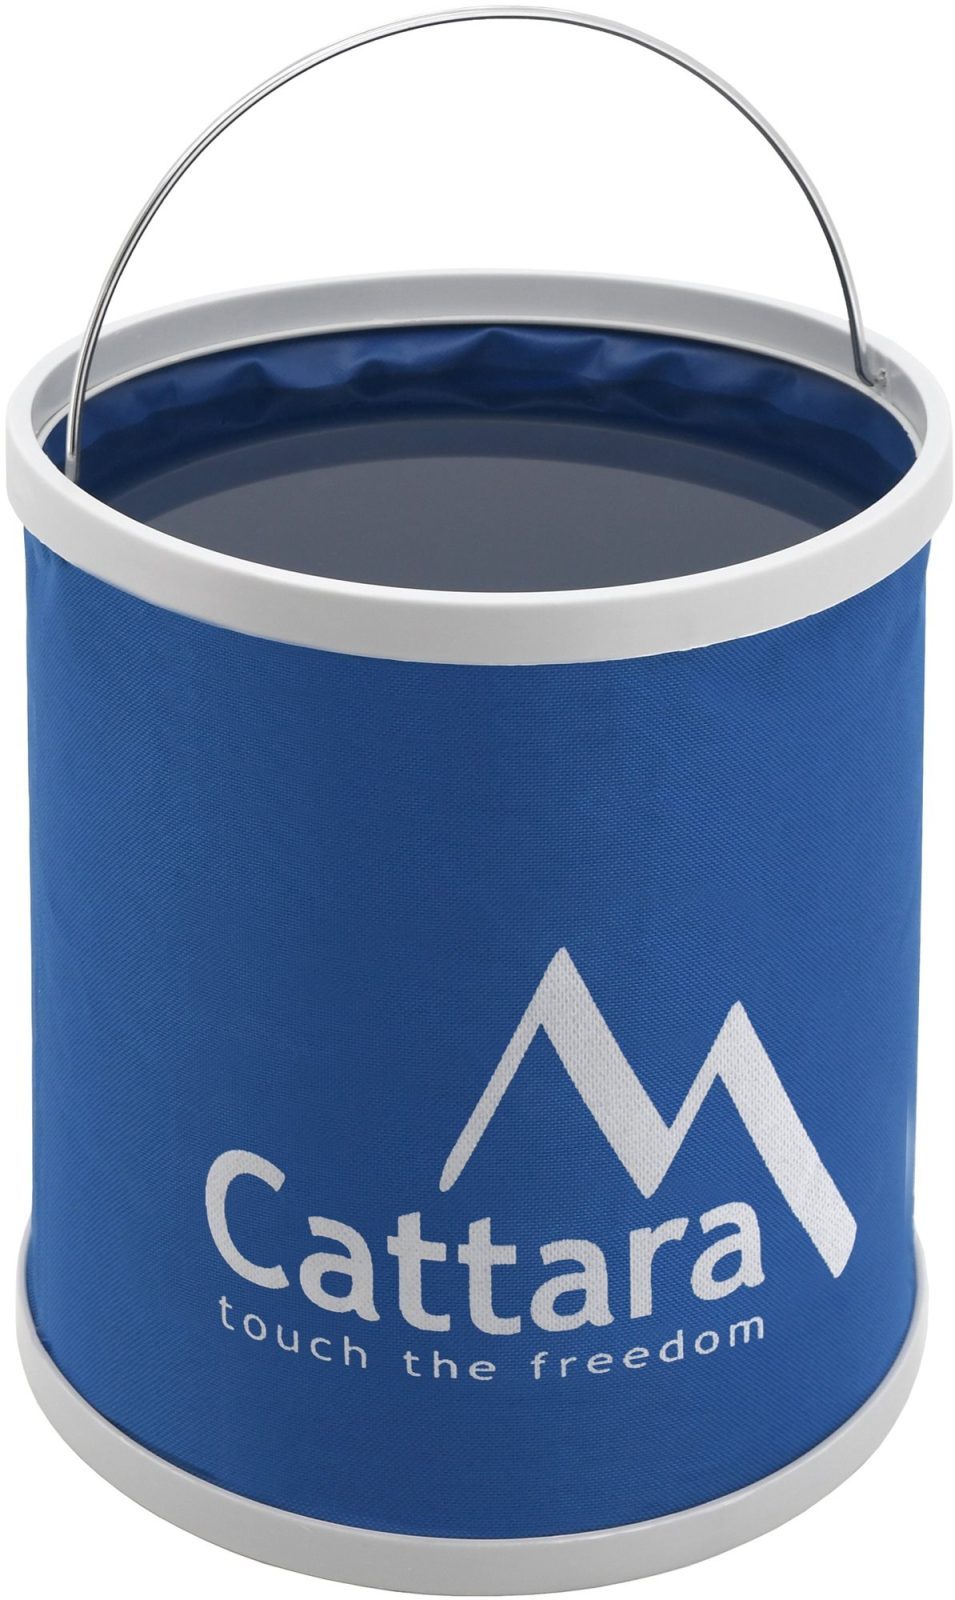 Edény Cattara összecsukható víztartály 9 literes